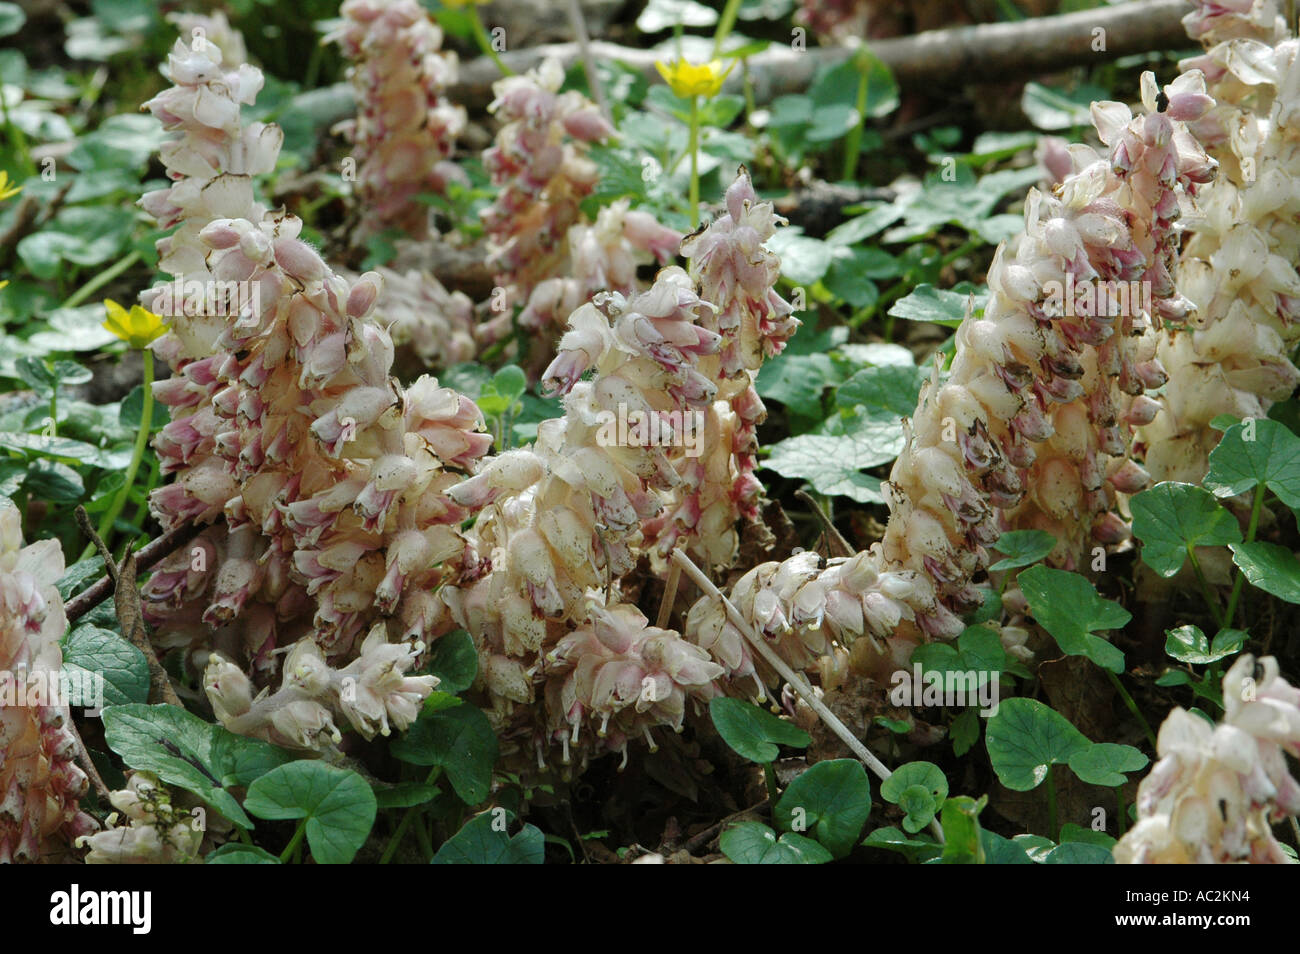 Toothwort growing in Hazel coppice Stock Photo